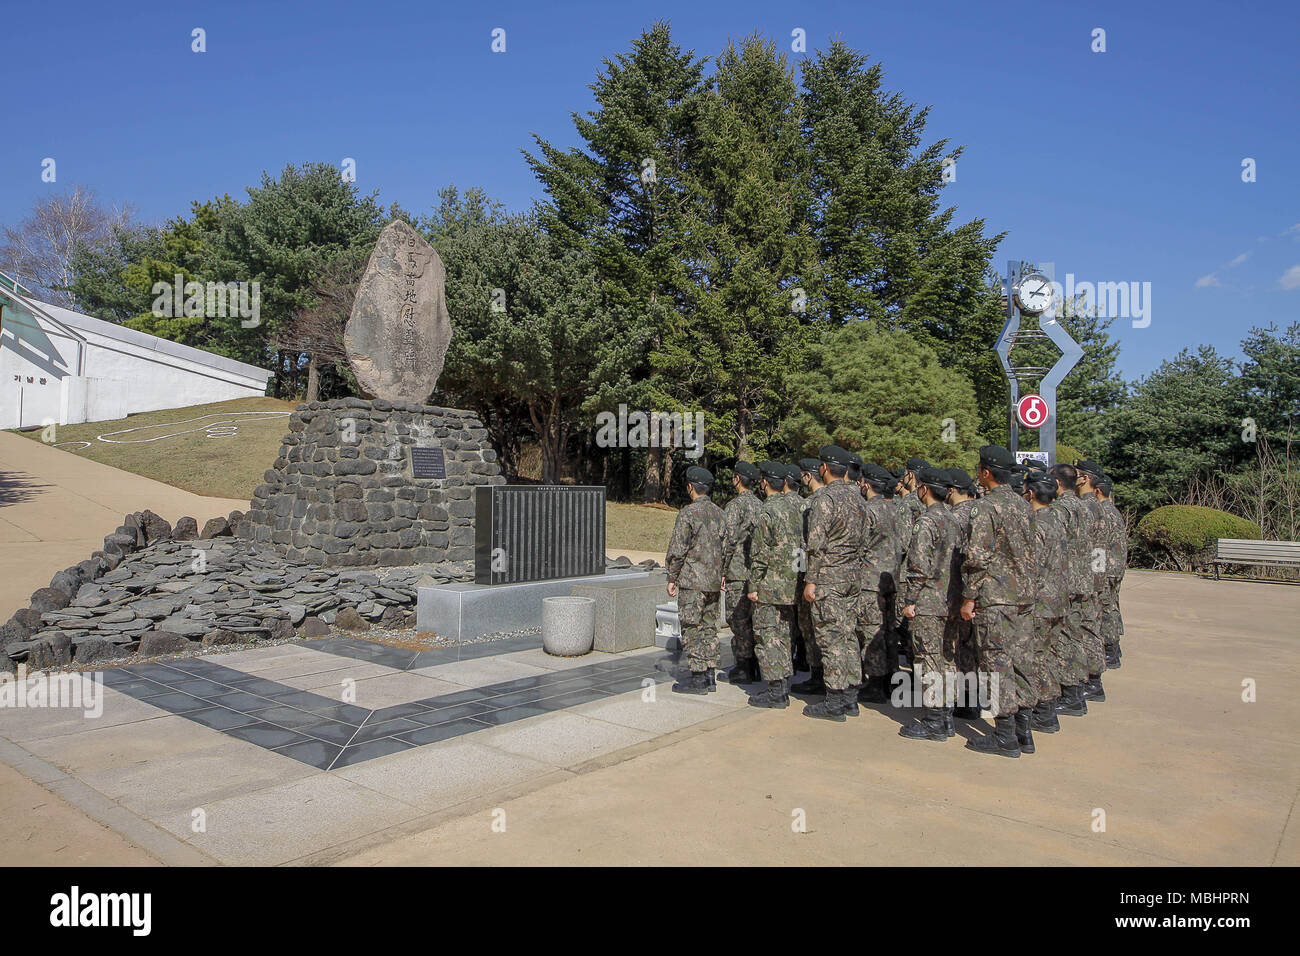 Cheorwon, GANGWON, Corea del Sud. Xi Apr, 2018. Aprile 11, 2018-Goyang, Korea-South sud coreano di soldati dell esercito visita battaglia di White Horse Memorial monumento in Cheorwon, Corea del Sud. La battaglia di White Horse è stato un altro in una serie di battaglie sanguinose per la collina dominante posizioni durante la Guerra di Corea. Baengma-goji era un 395-metro (1,296 ft) hill nel triangolo di ferro, formata da Pyonggang al suo picco e Gimhwa-eup Cheorwon e alla sua base è stata una strategica rotta di trasporto nella regione centrale della penisola coreana. White Horse è stata sulla cresta di una collina boschiva a massa che estesi in un n Foto Stock